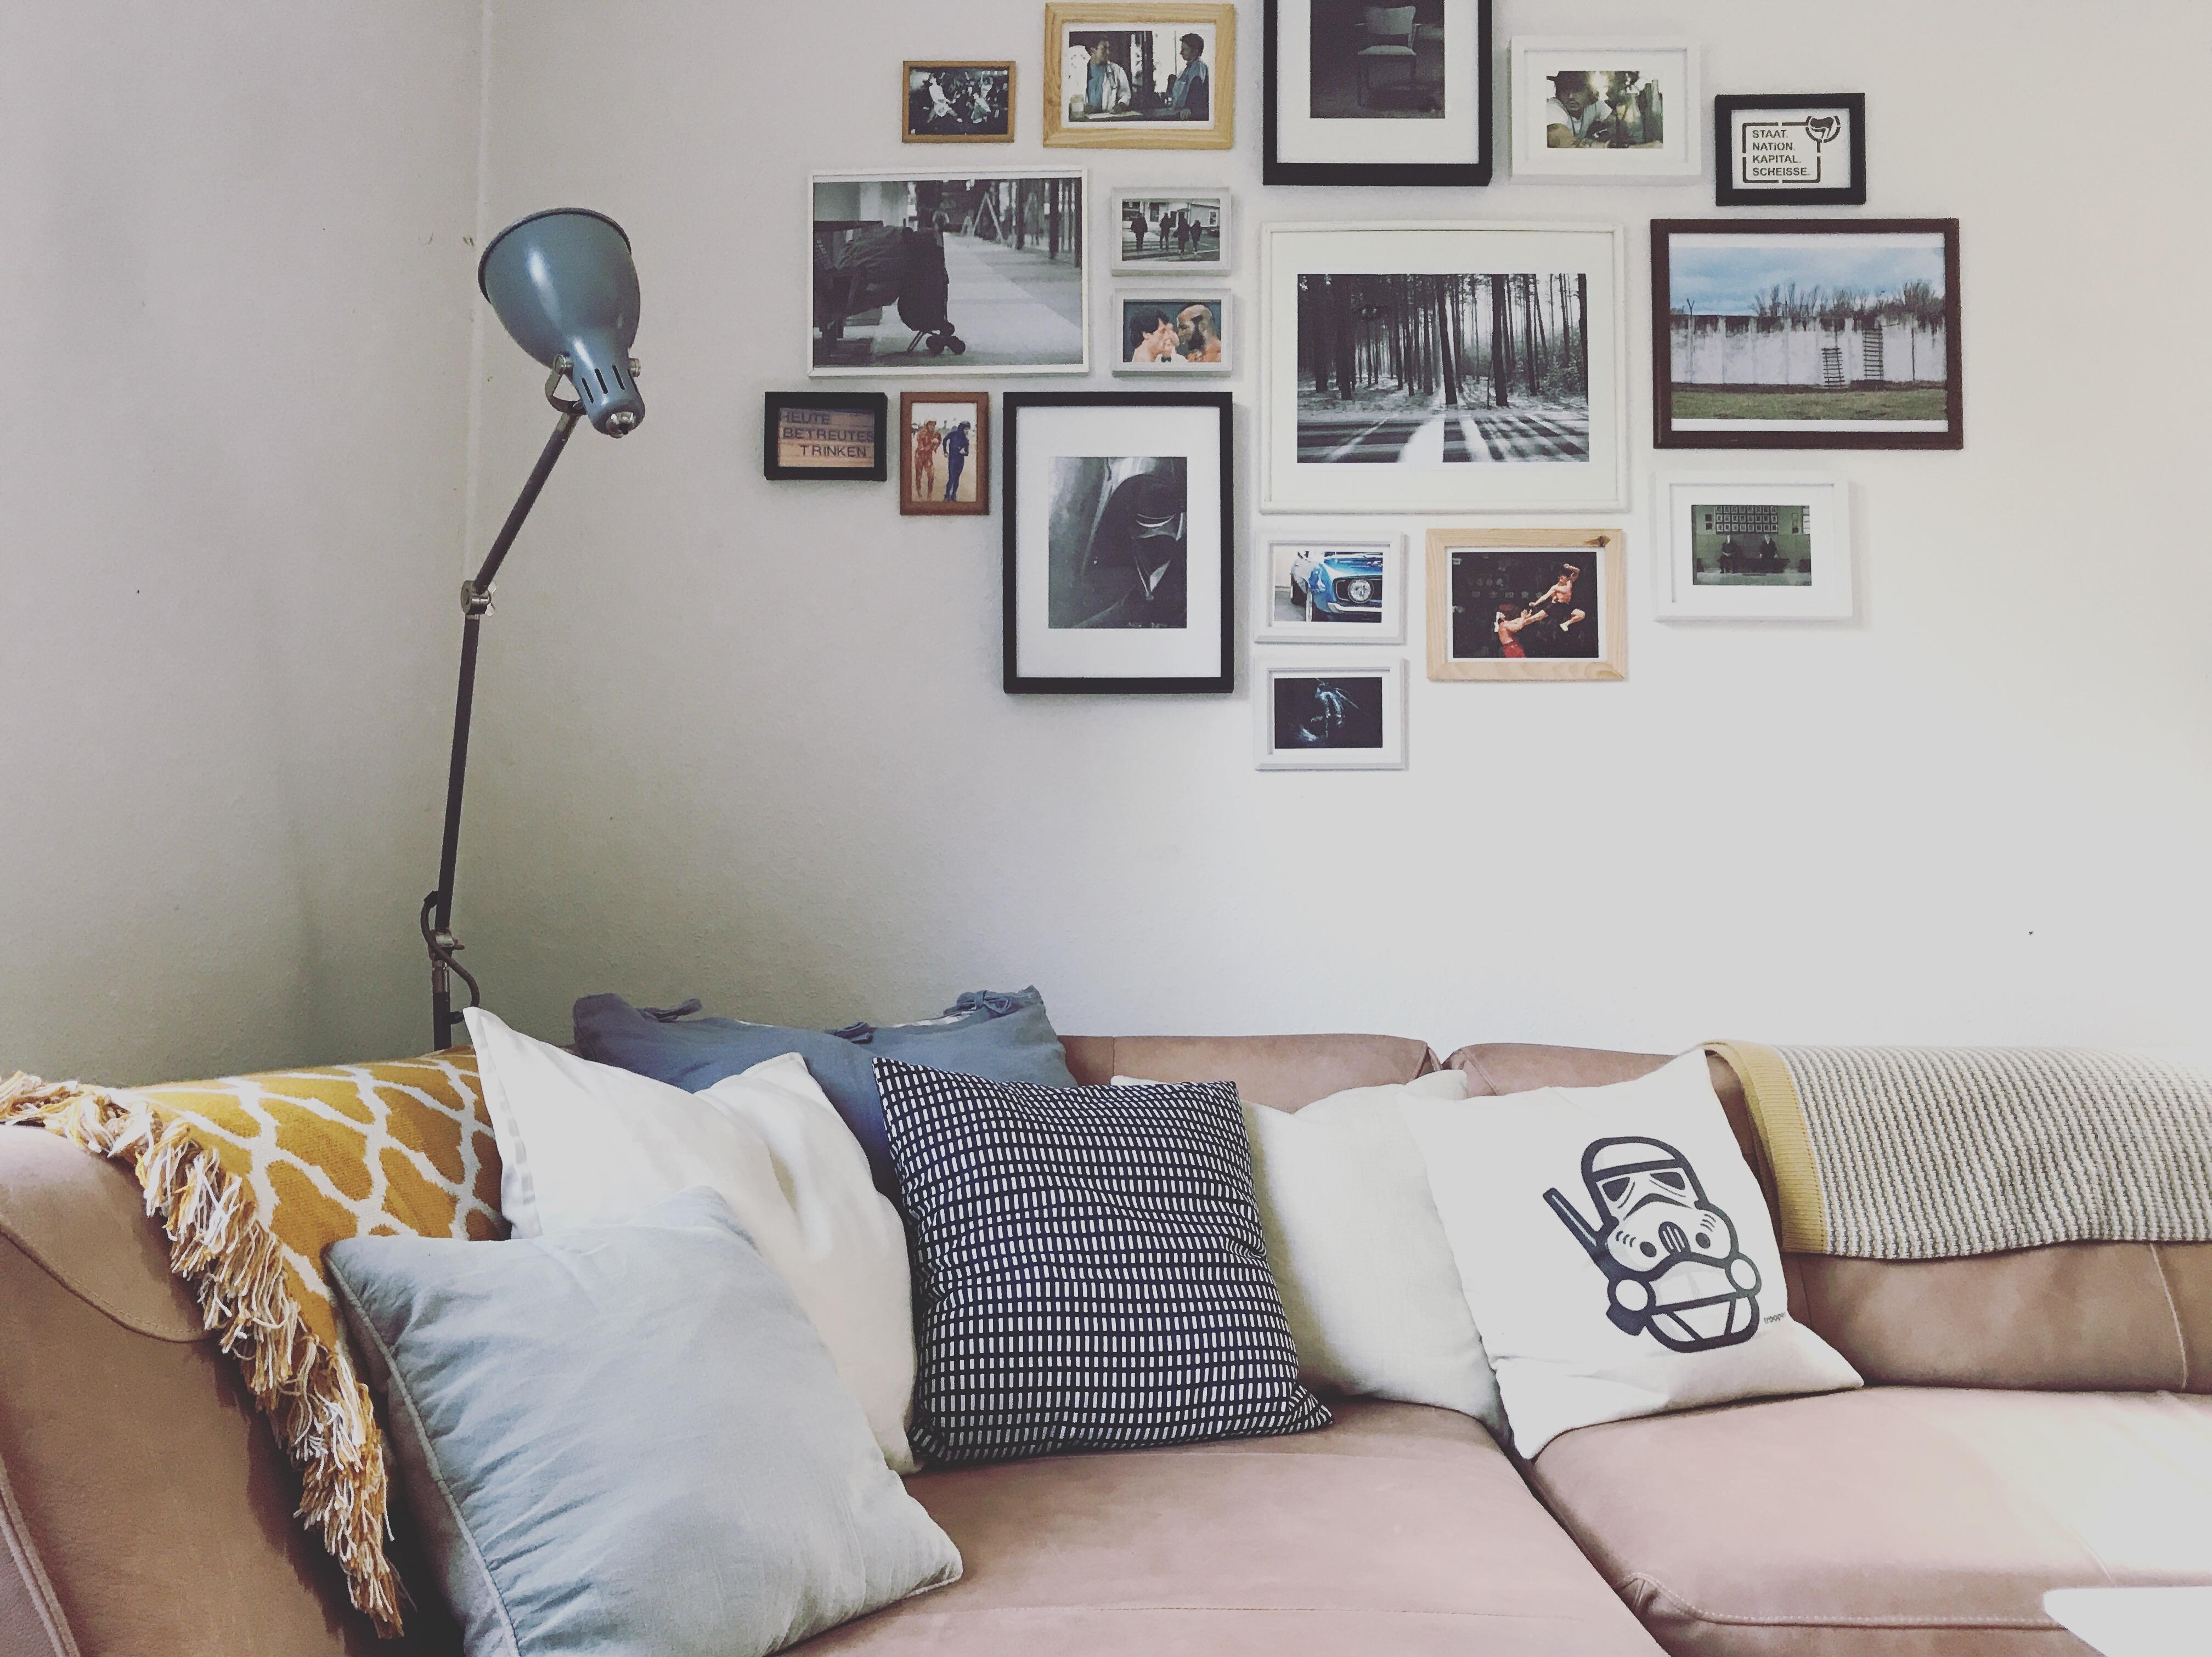 Wer schmeißt sich zuerst in die Kissenecke? #livingroom #kuschelparty #sofaecke #bilderwand #wohnzimmer #Couch #sofa